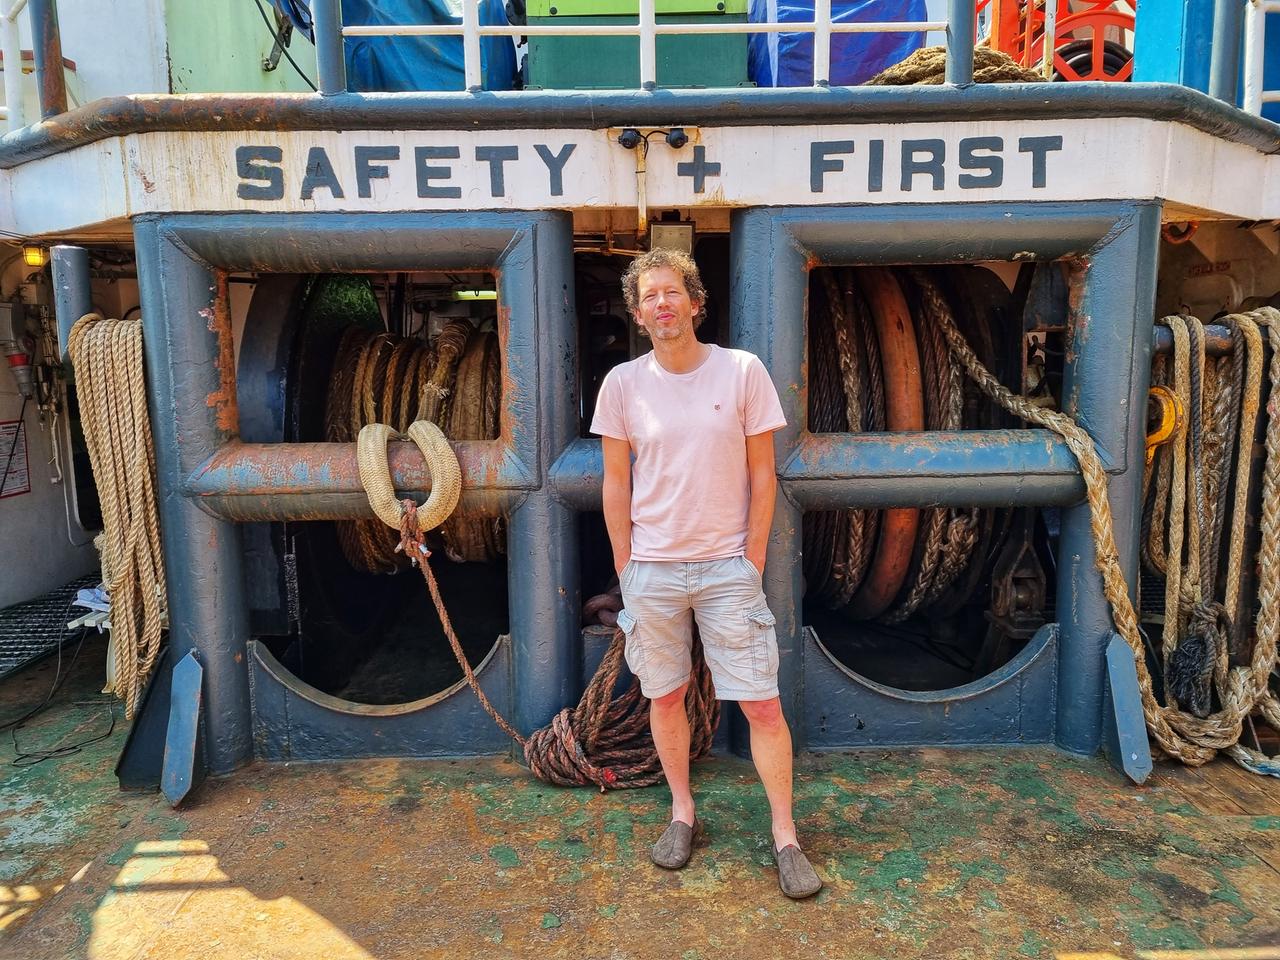 Algenfarmer Joost Wouters aus den Niederlanden steht auf einem Boot an der Küste. Er trägt kurze Hose und T-Shirt. Die Sonne scheint.